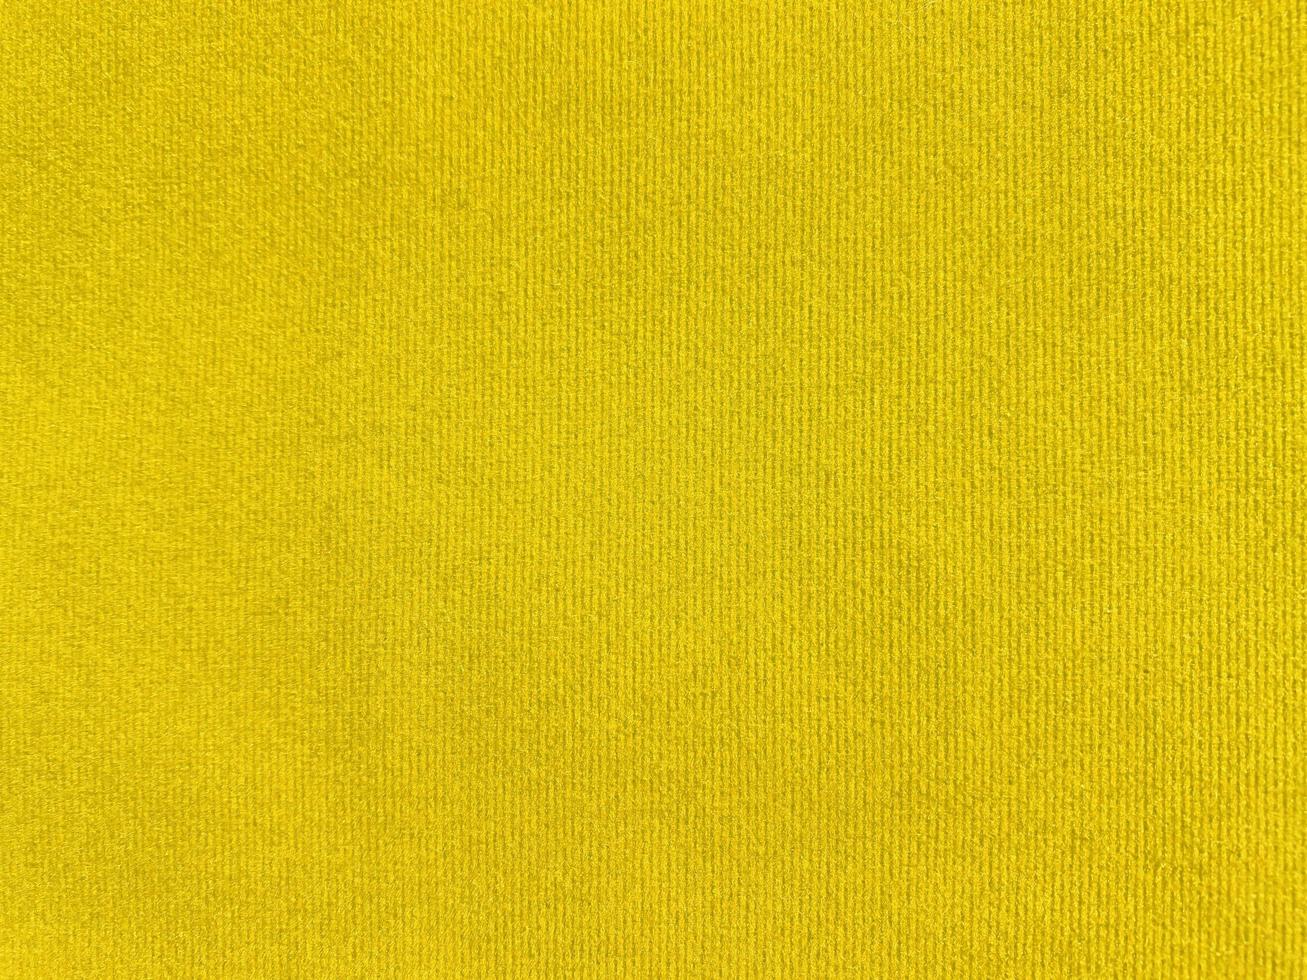 gelbe Samtstoffstruktur als Hintergrund verwendet. leerer gelber Stoffhintergrund aus weichem und glattem Textilmaterial. Es gibt Platz für Text. foto